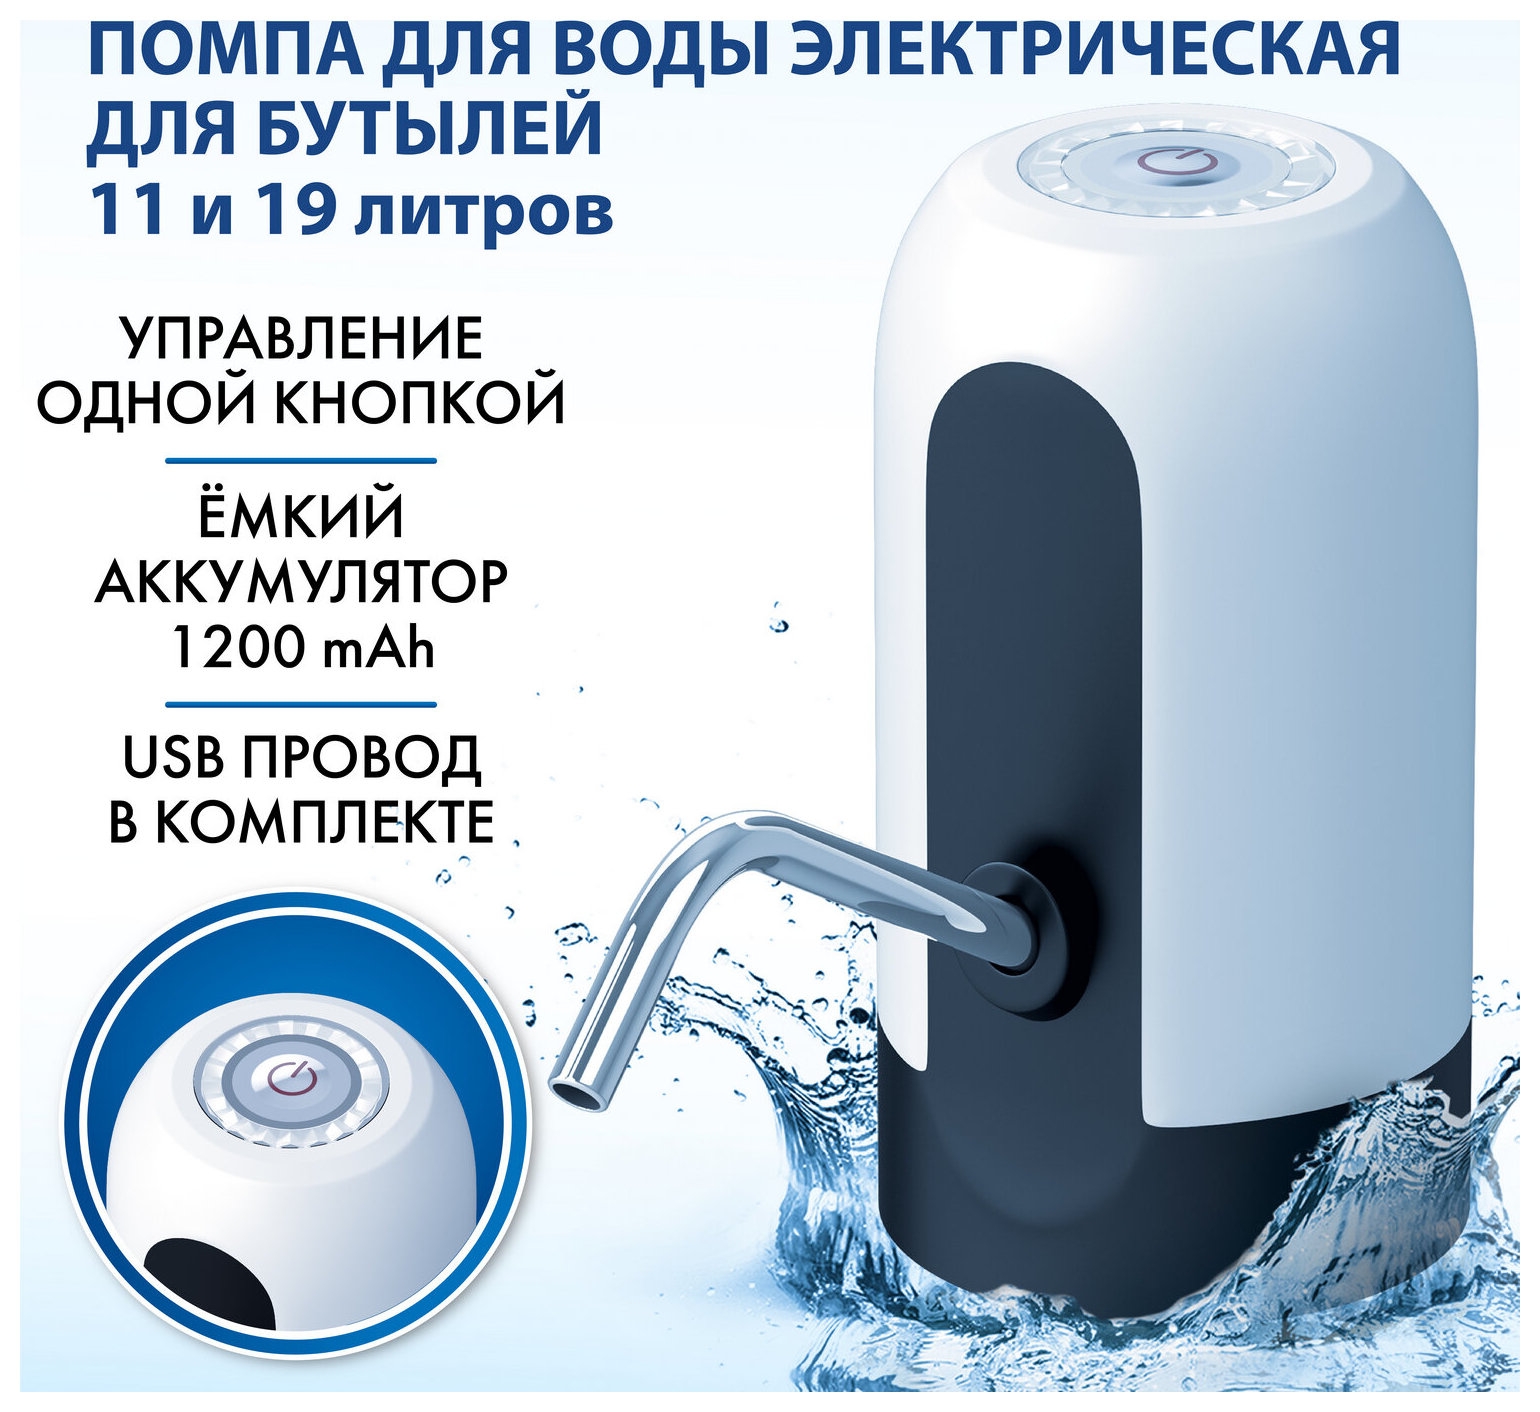 Помпа для воды электрическая Sonnen Ewd161ww, 1,6 л/мин, аккумулятор, белая, 455470